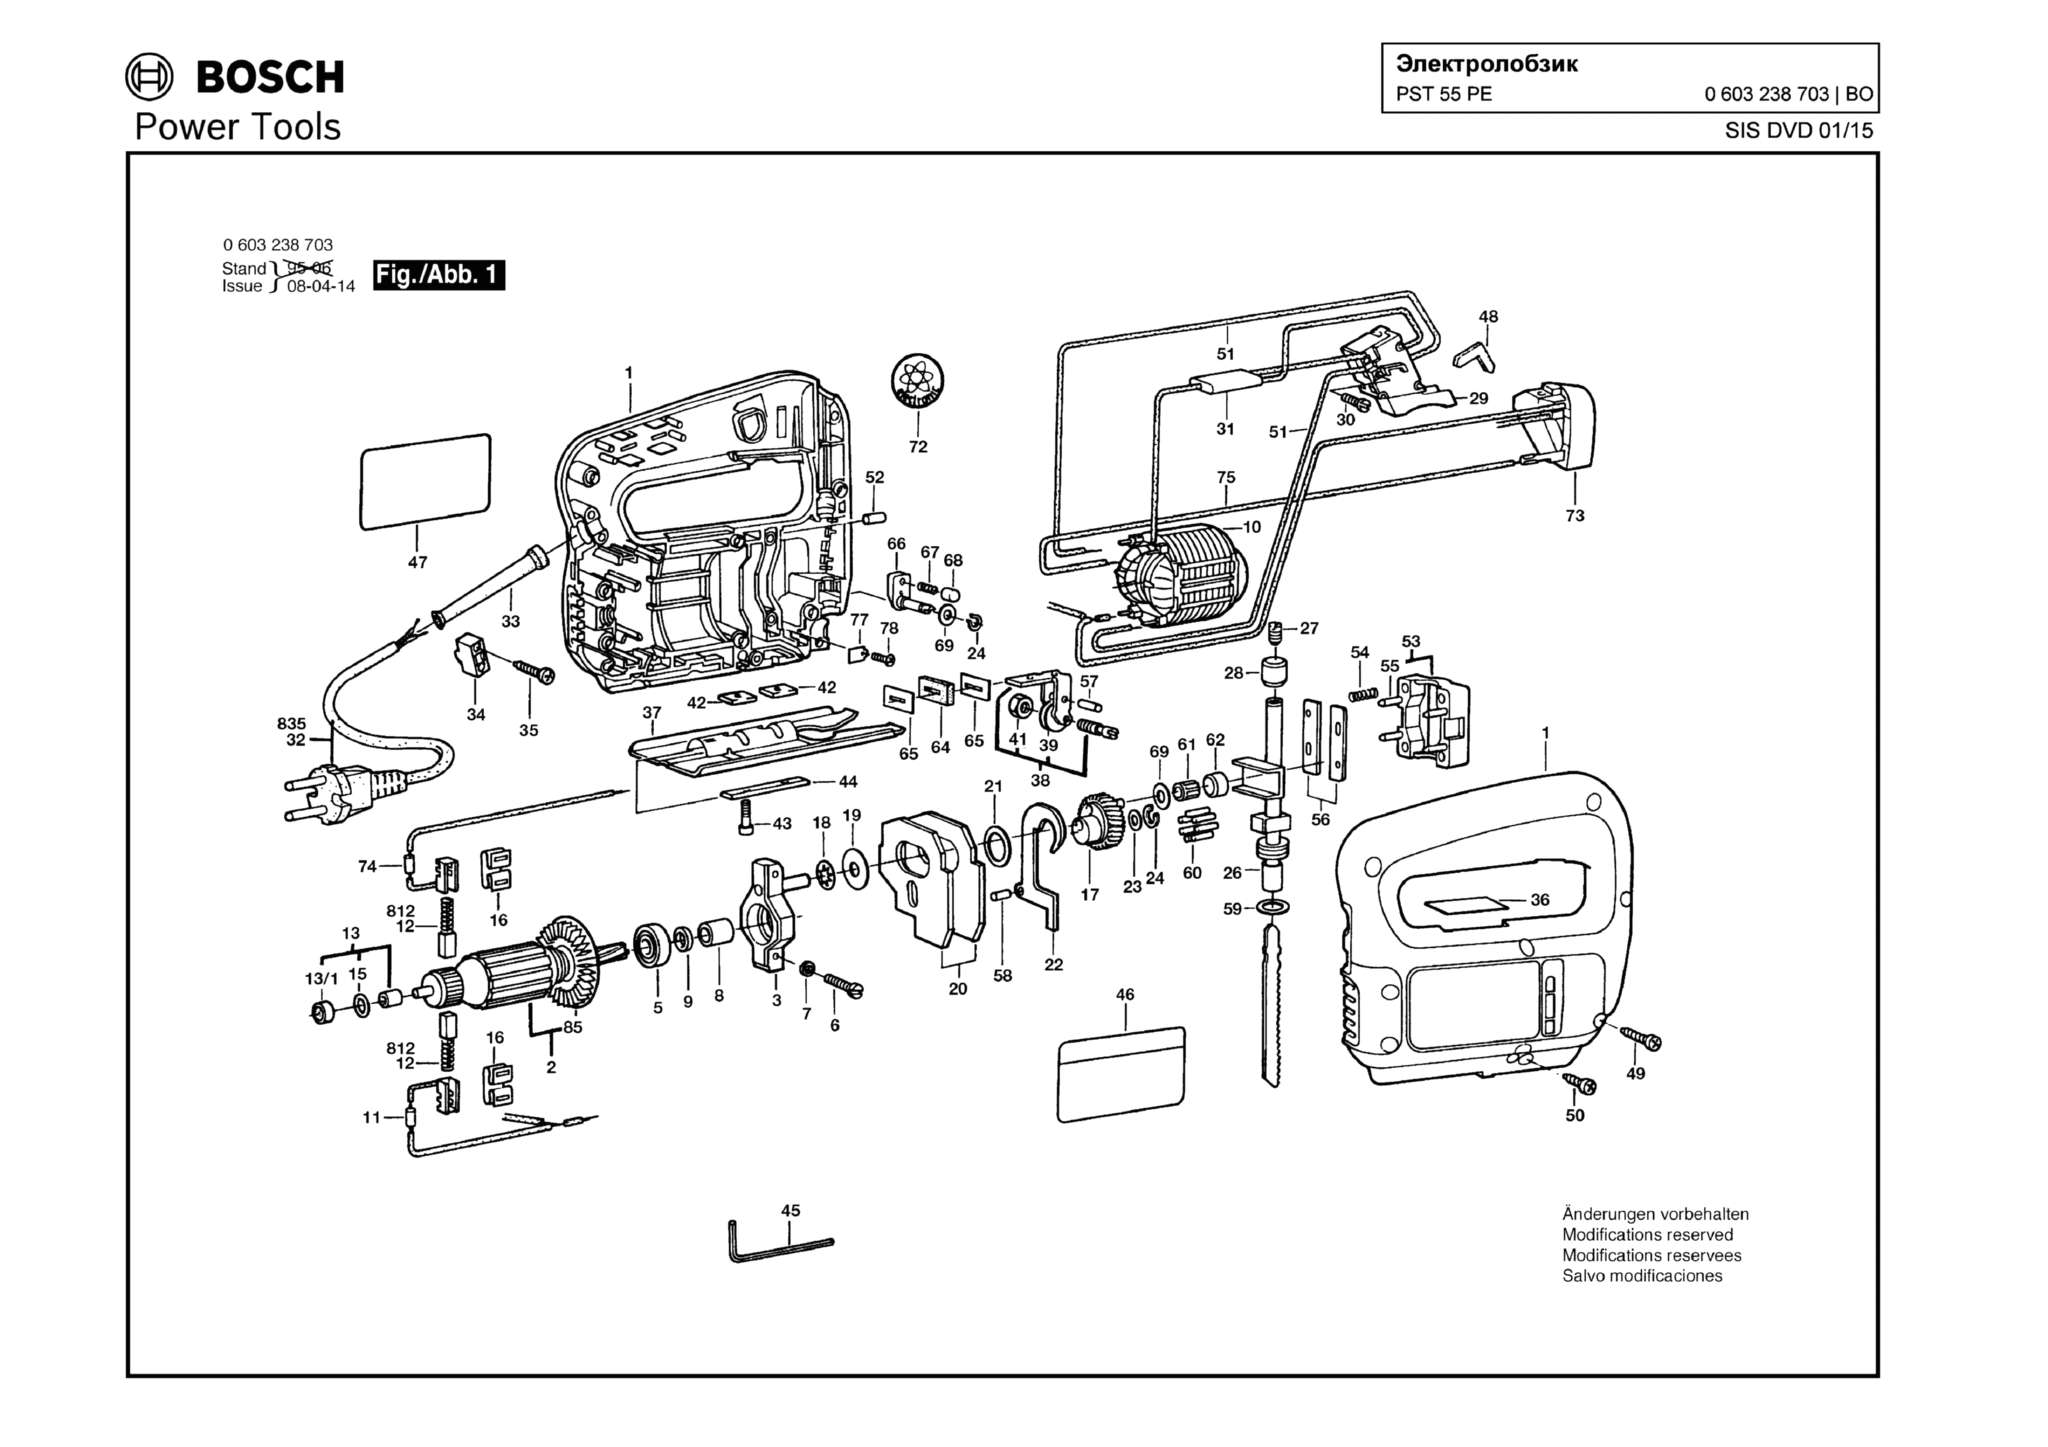 Запчасти, схема и деталировка Bosch PST 55 PE (ТИП 603238703)